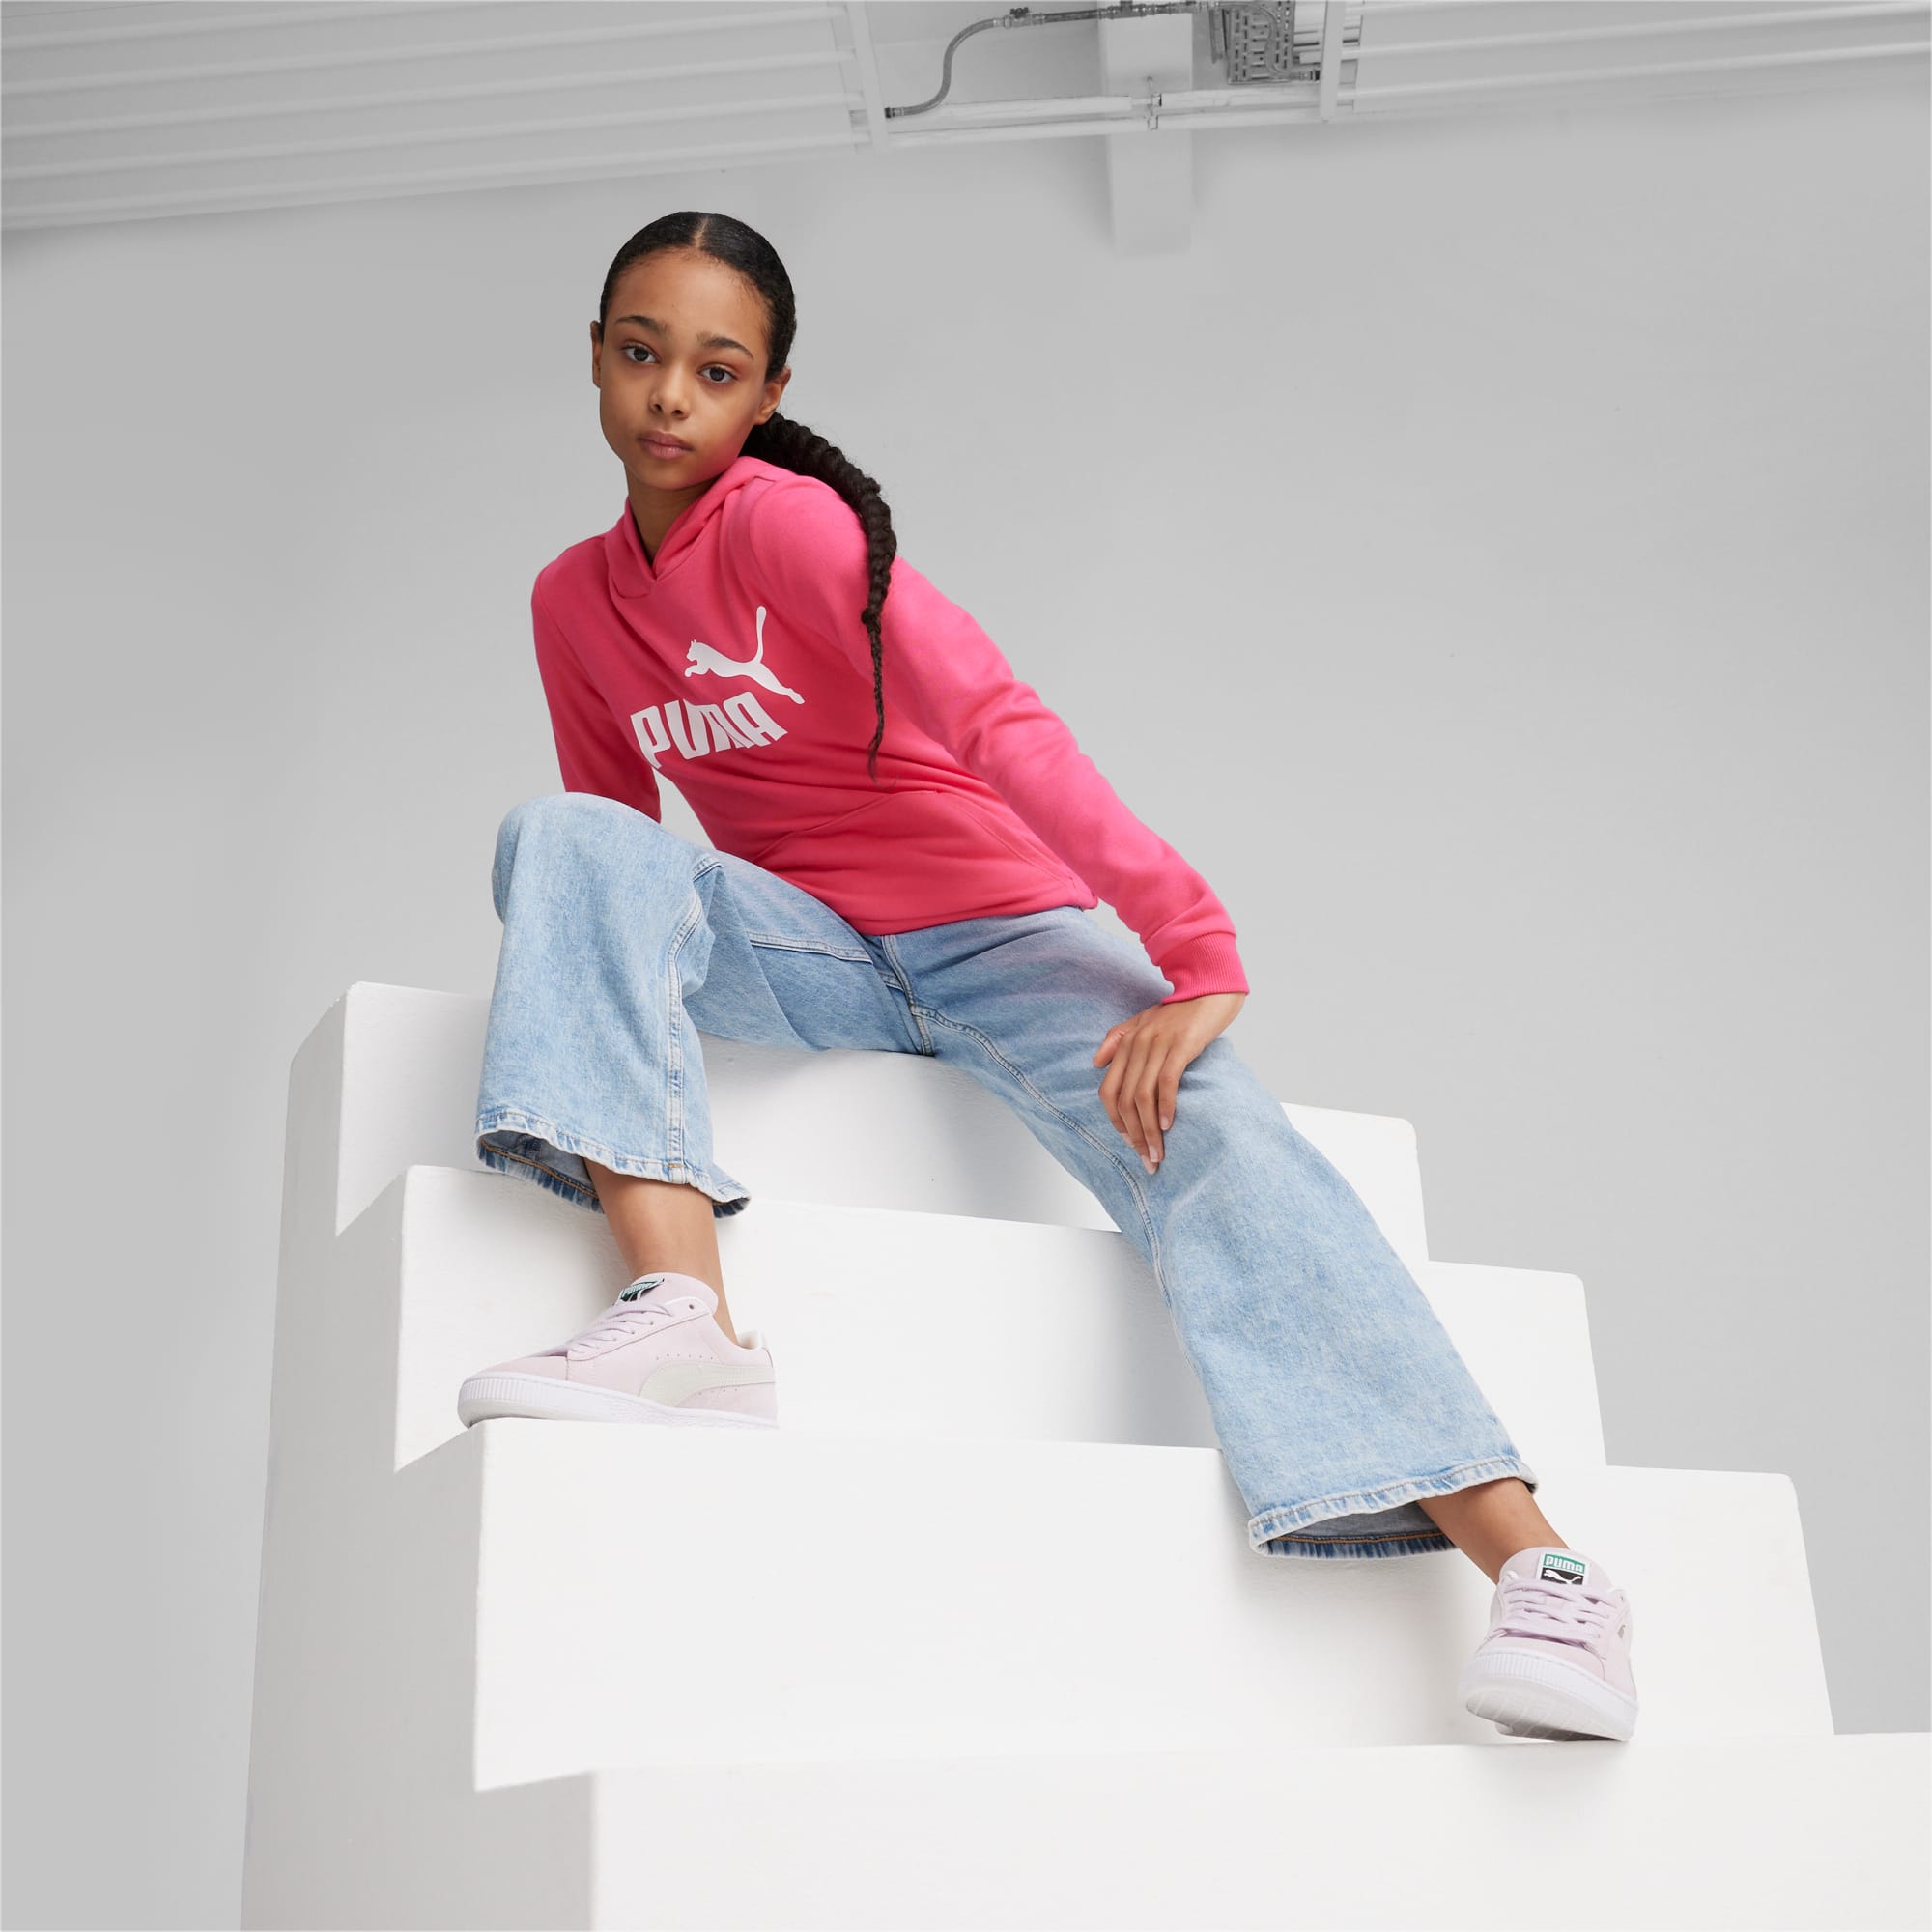 PUMA Essentials Logo Youth Hoodie, Garnet Rose, Size 2-3Y, Clothing